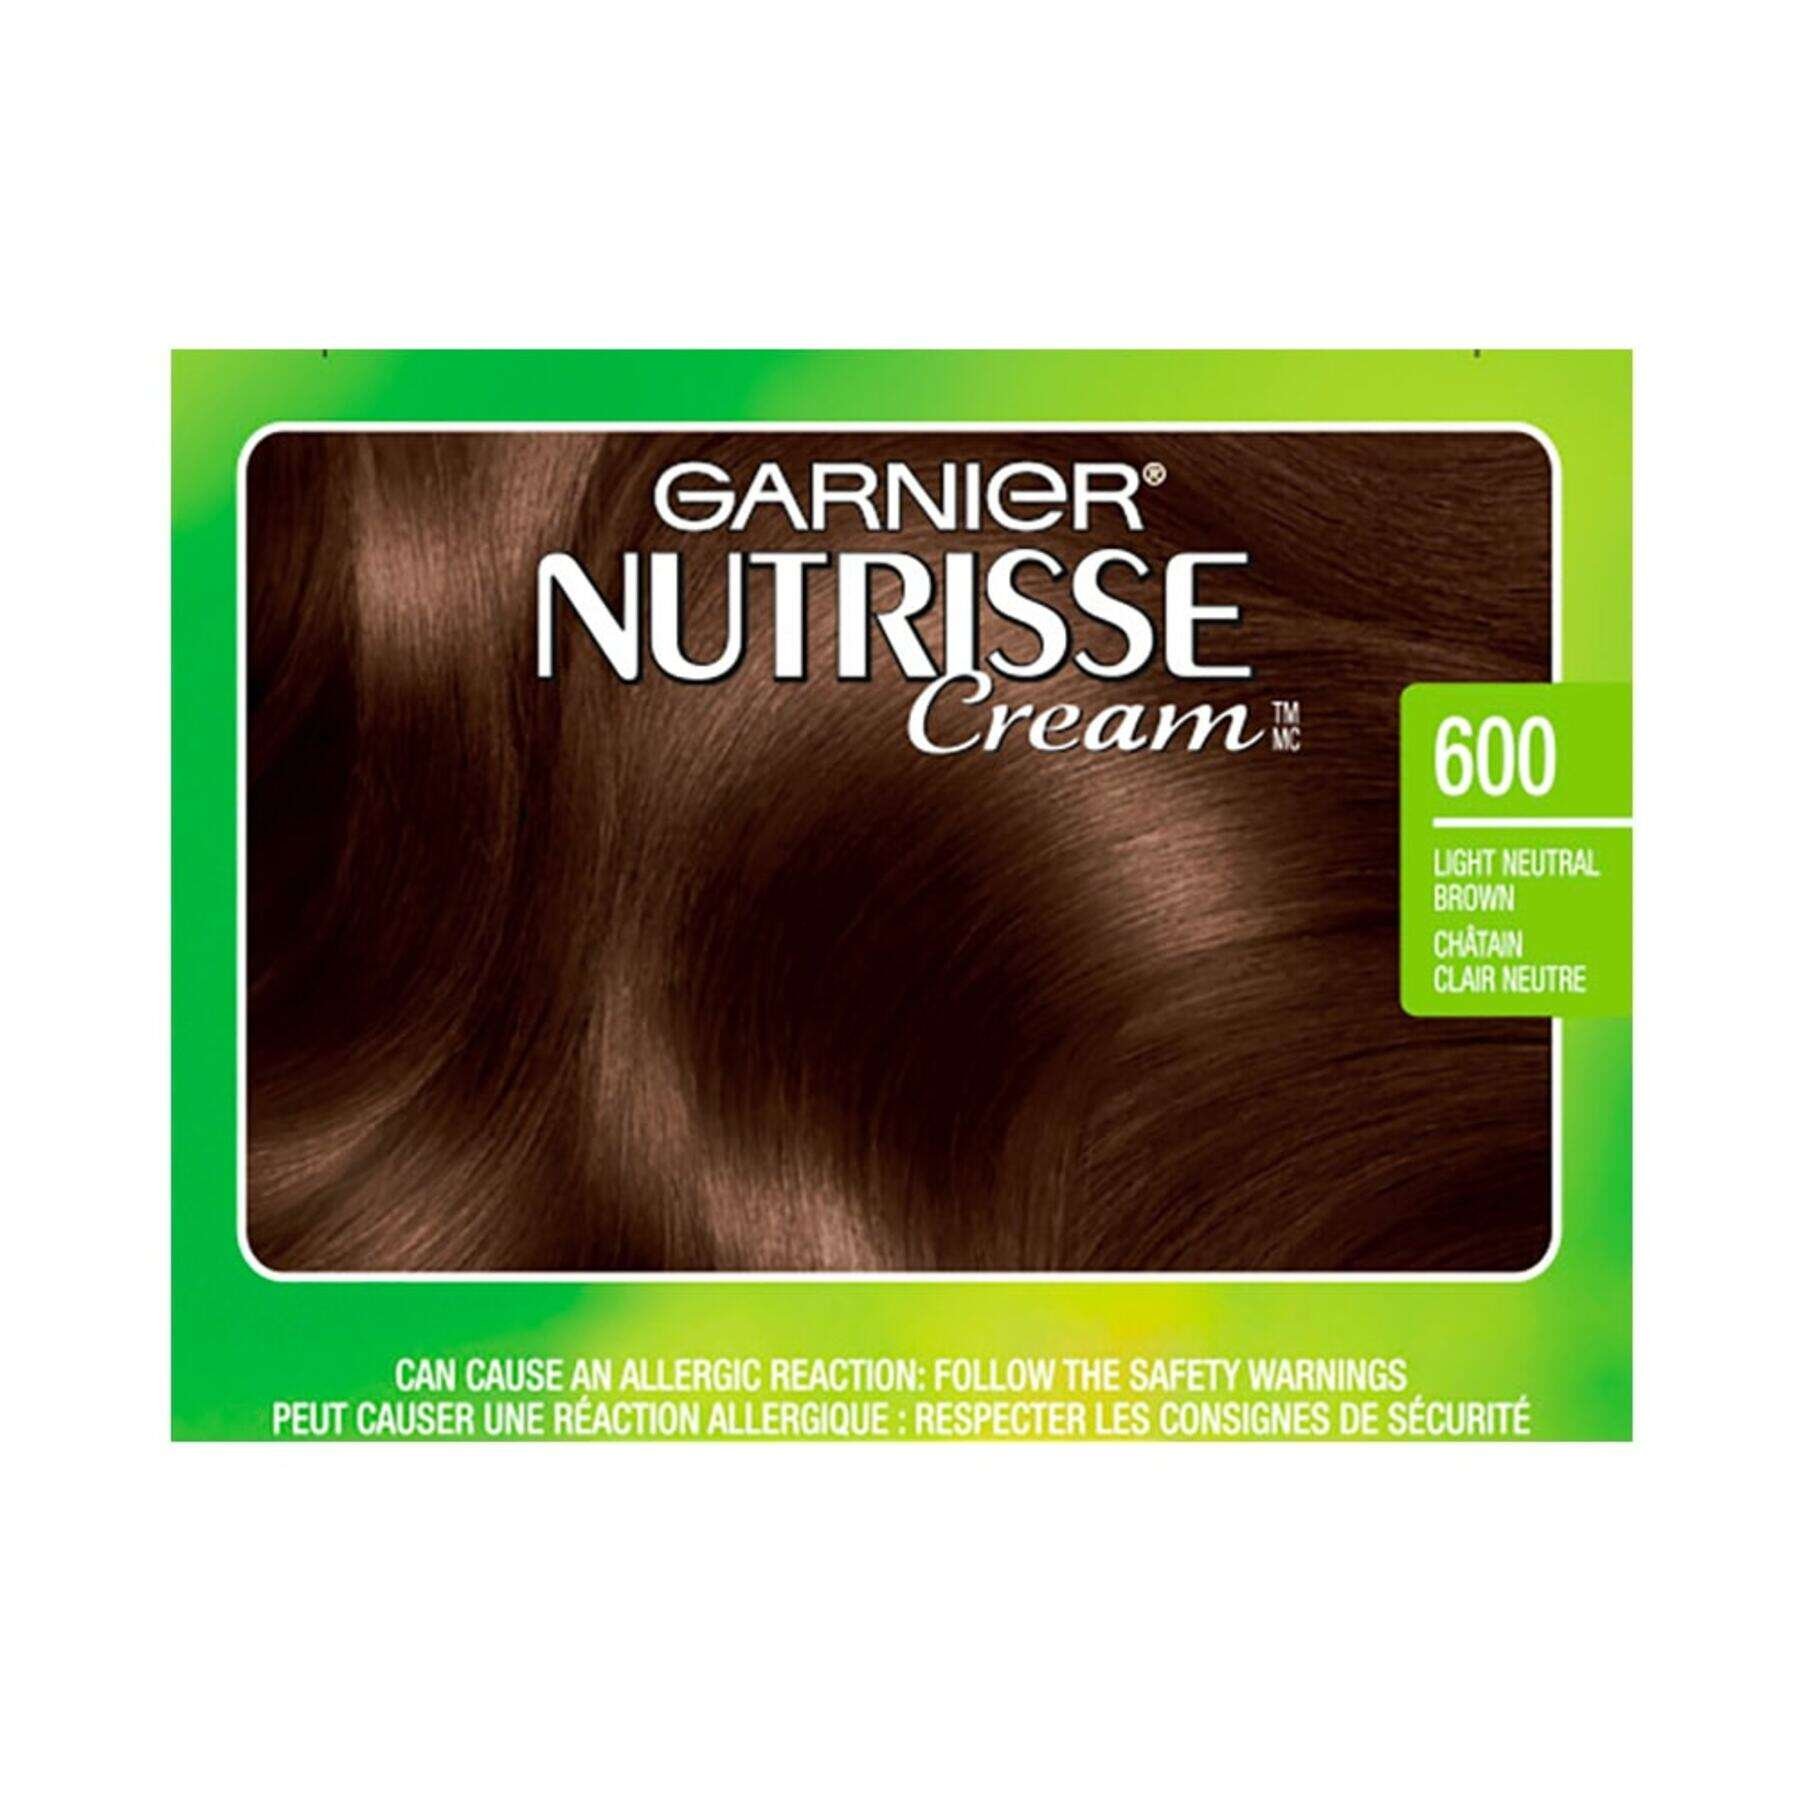 garnier hair dye nutrisse cream 600 light neutral brown 0603084488995 swatch